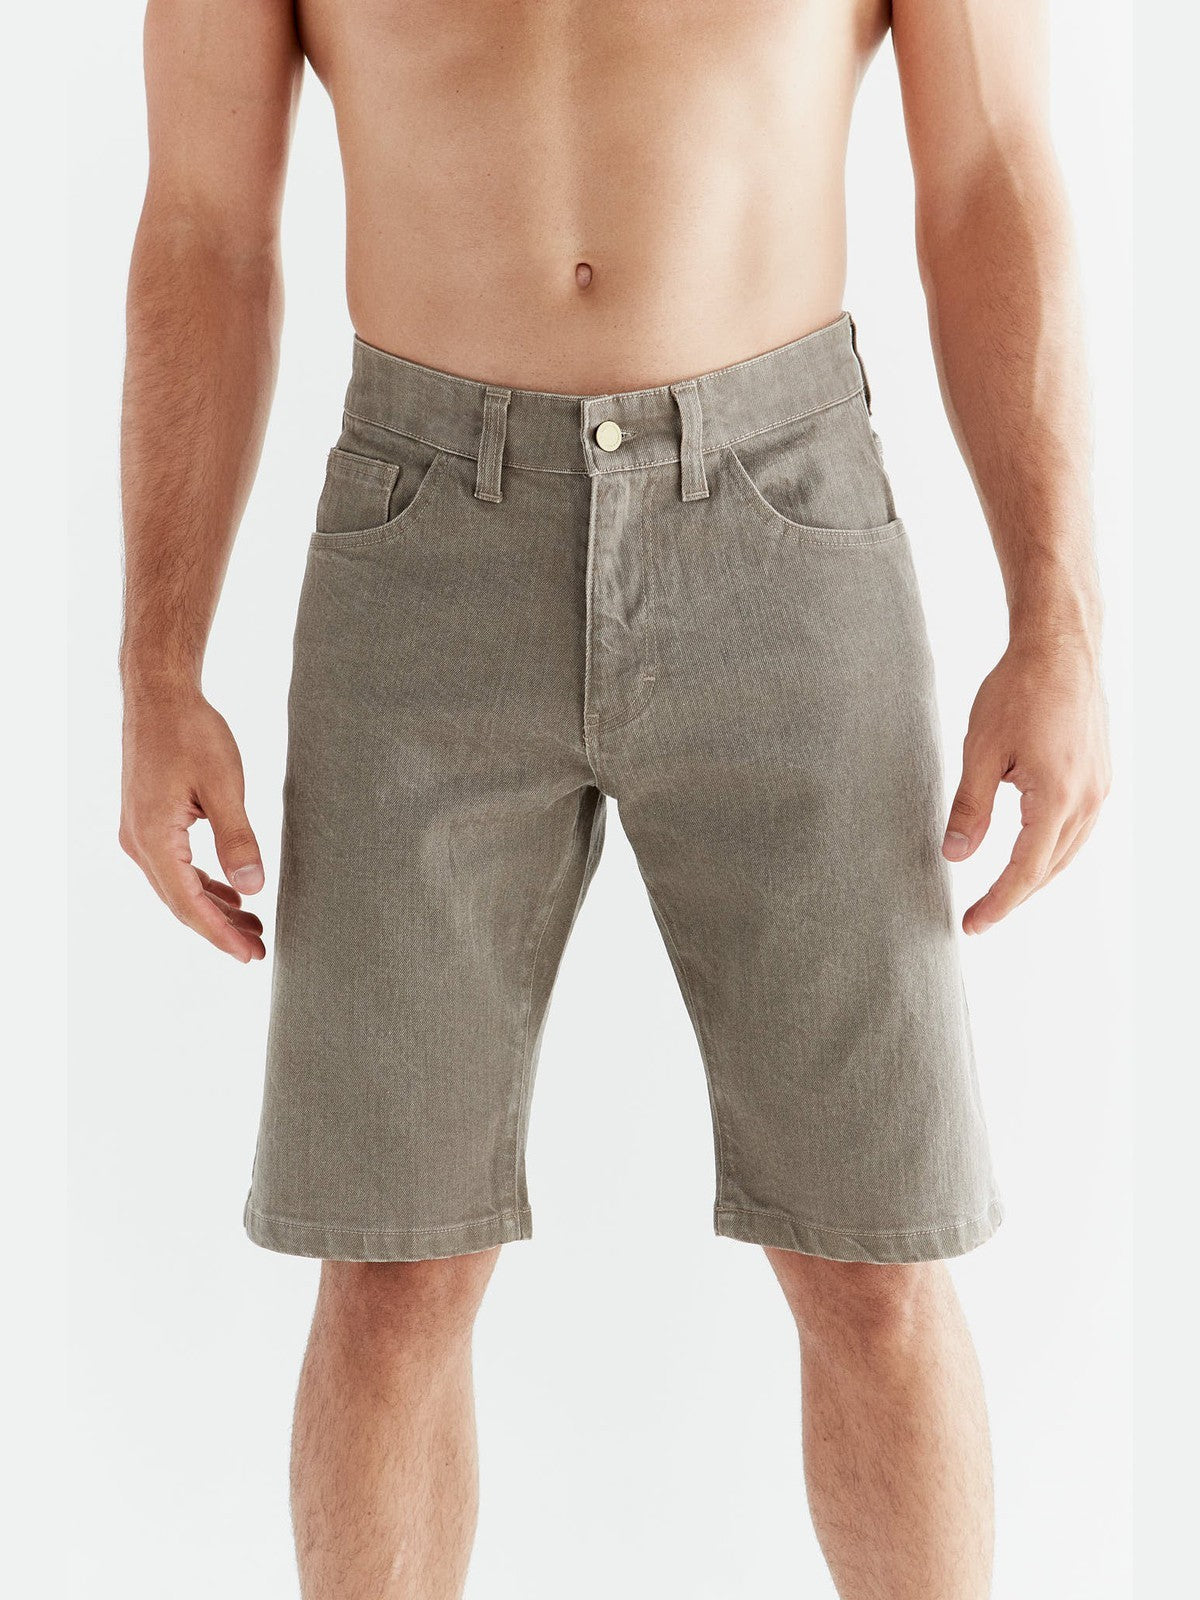 MA3018-395 | Herren Denim Shorts in Ton Waschung - Pebble